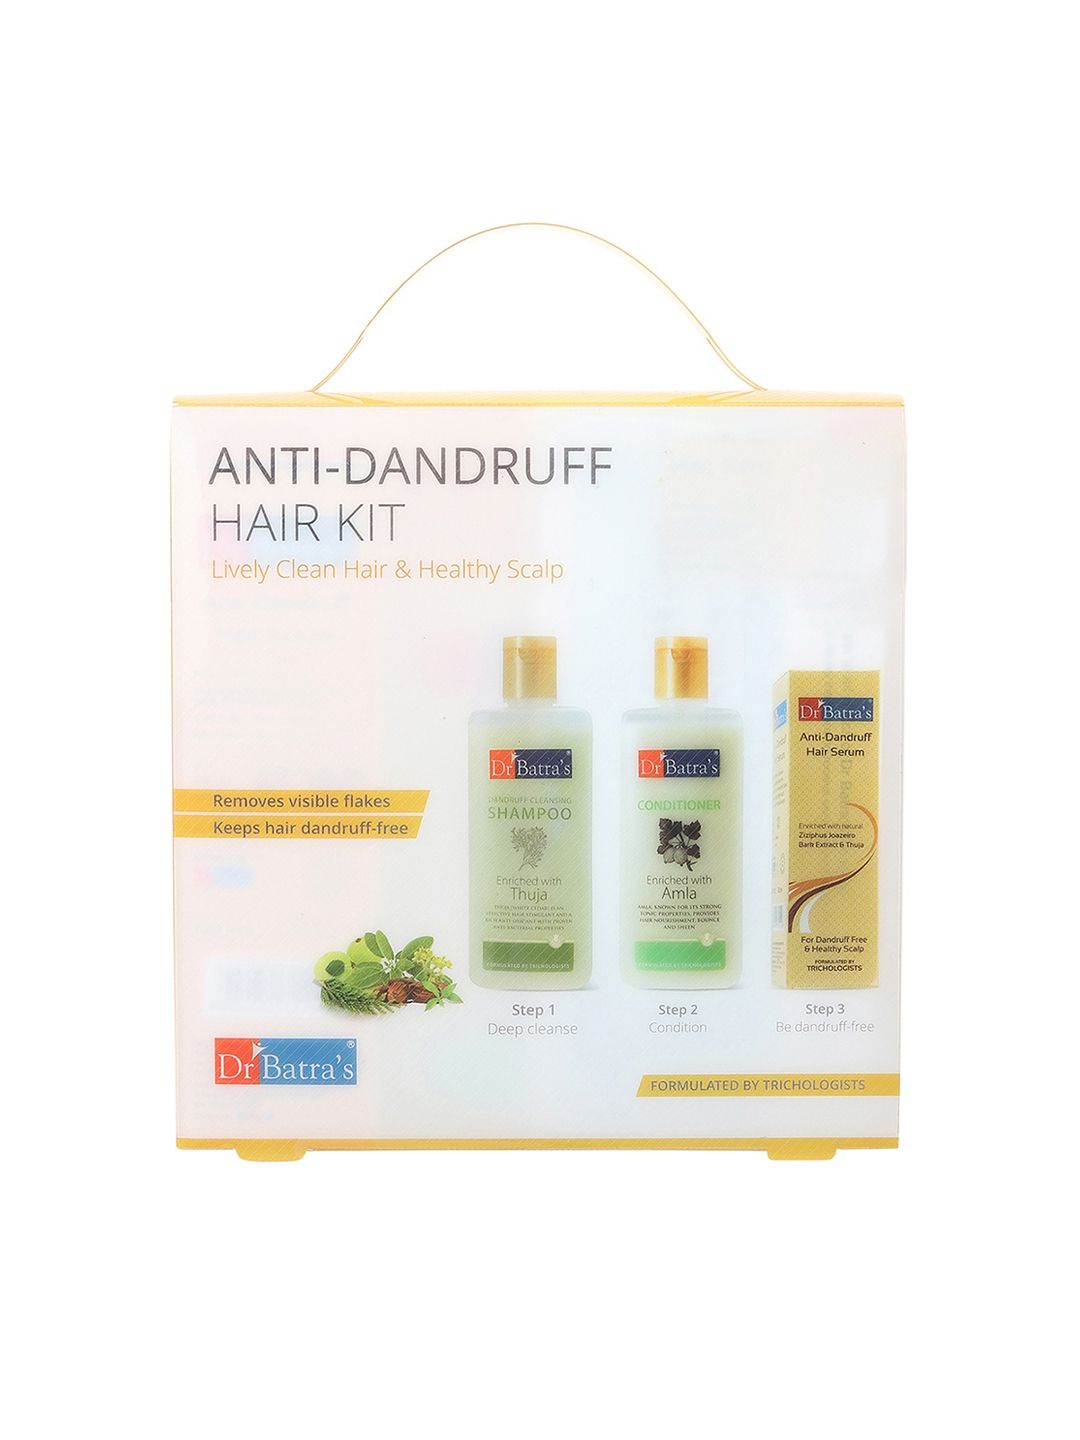 Dr. Batras Unisex Anti-Dandruff Hair Care Kit Price in India